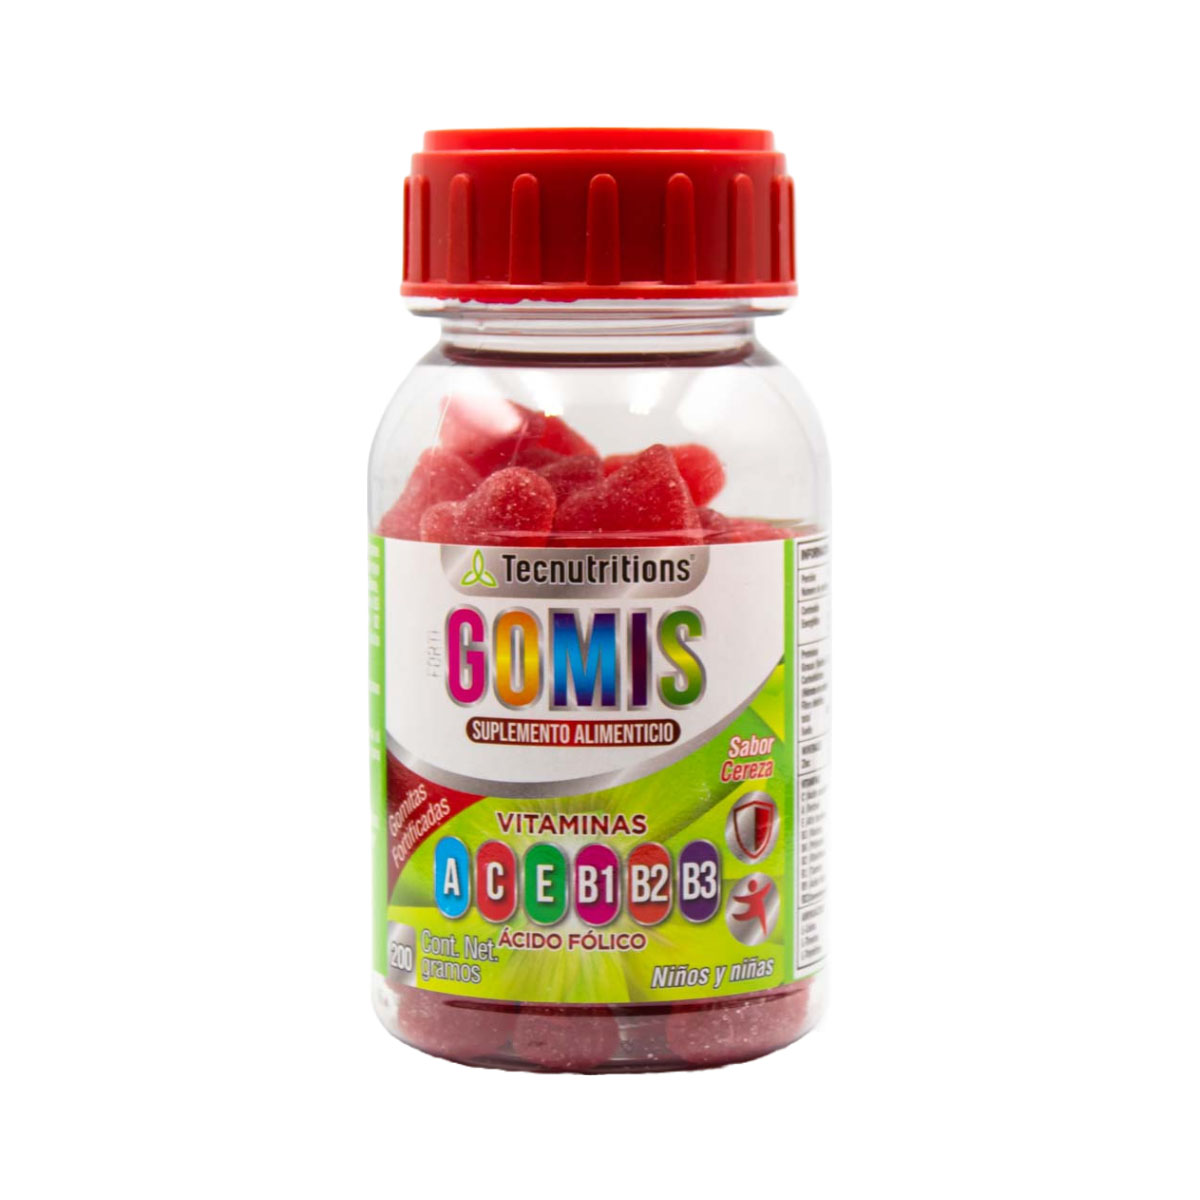 Suplemento alimenticio Fortigomis, 200 gr, con vitaminas, complejo b, zinc, multivitamínico para niños